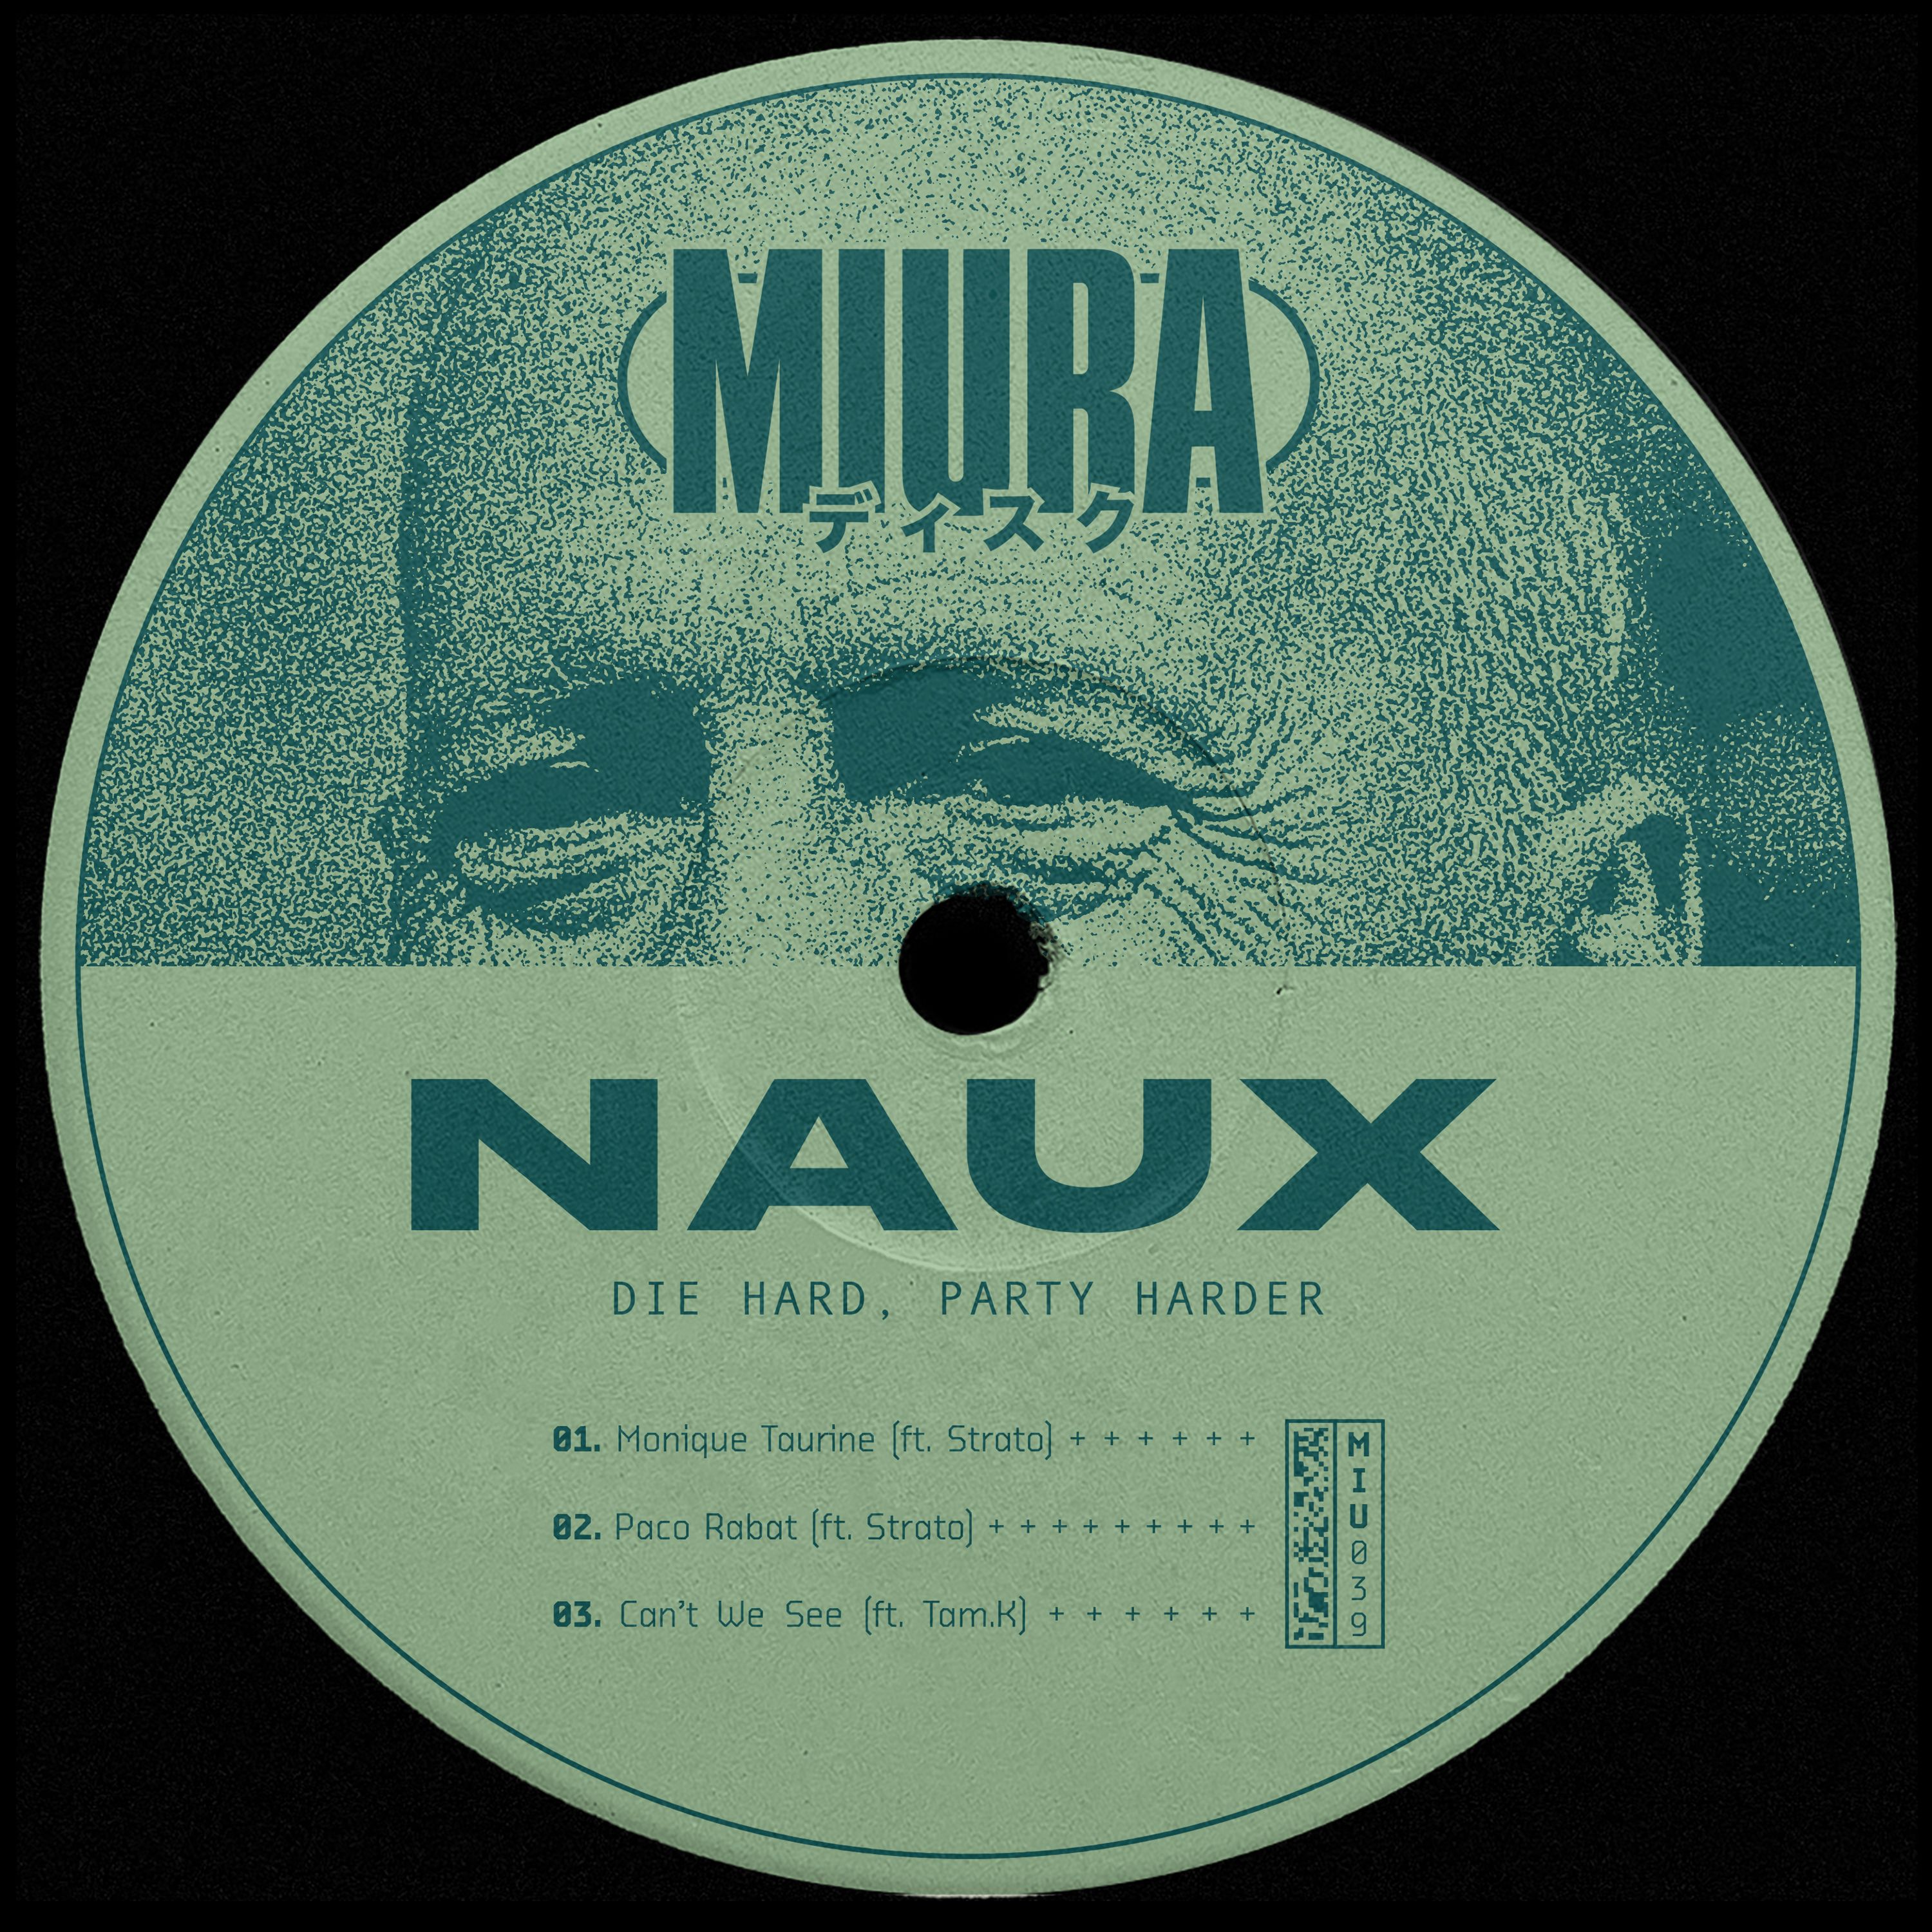 Descarregar PREMIERE: Naux & Strato - Monique Taurine [Miura Records]